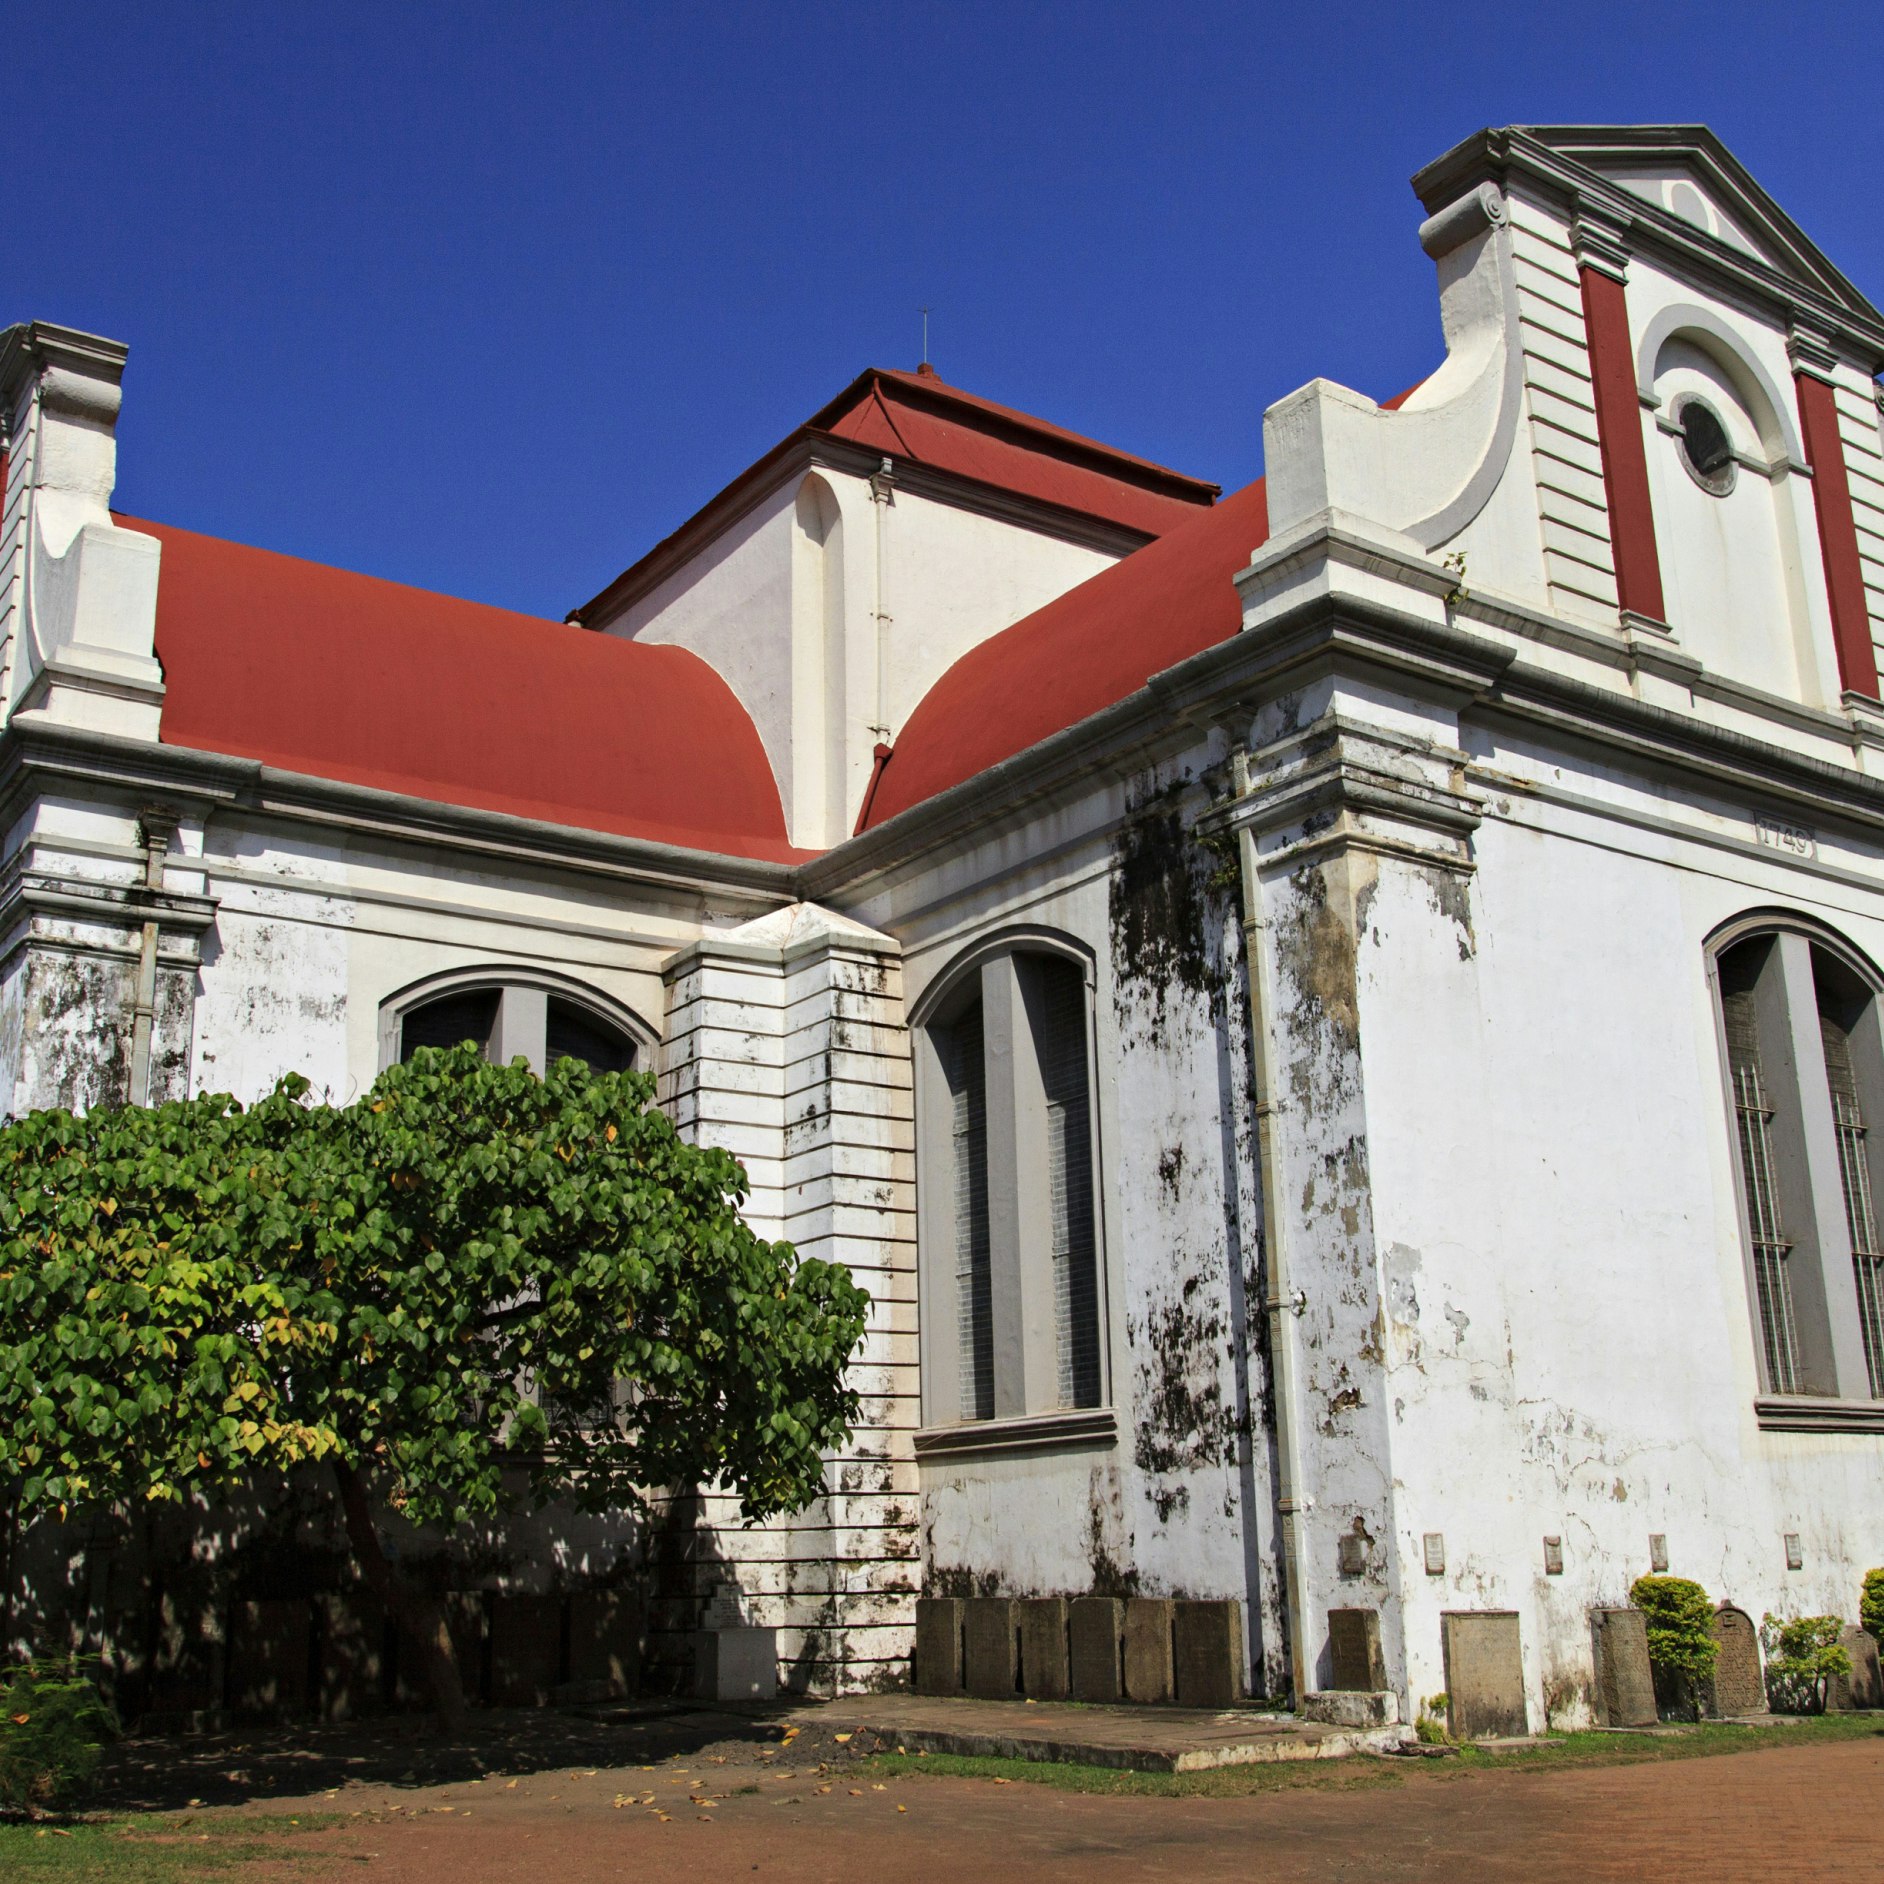 Old Dutch church in Sri Lanka